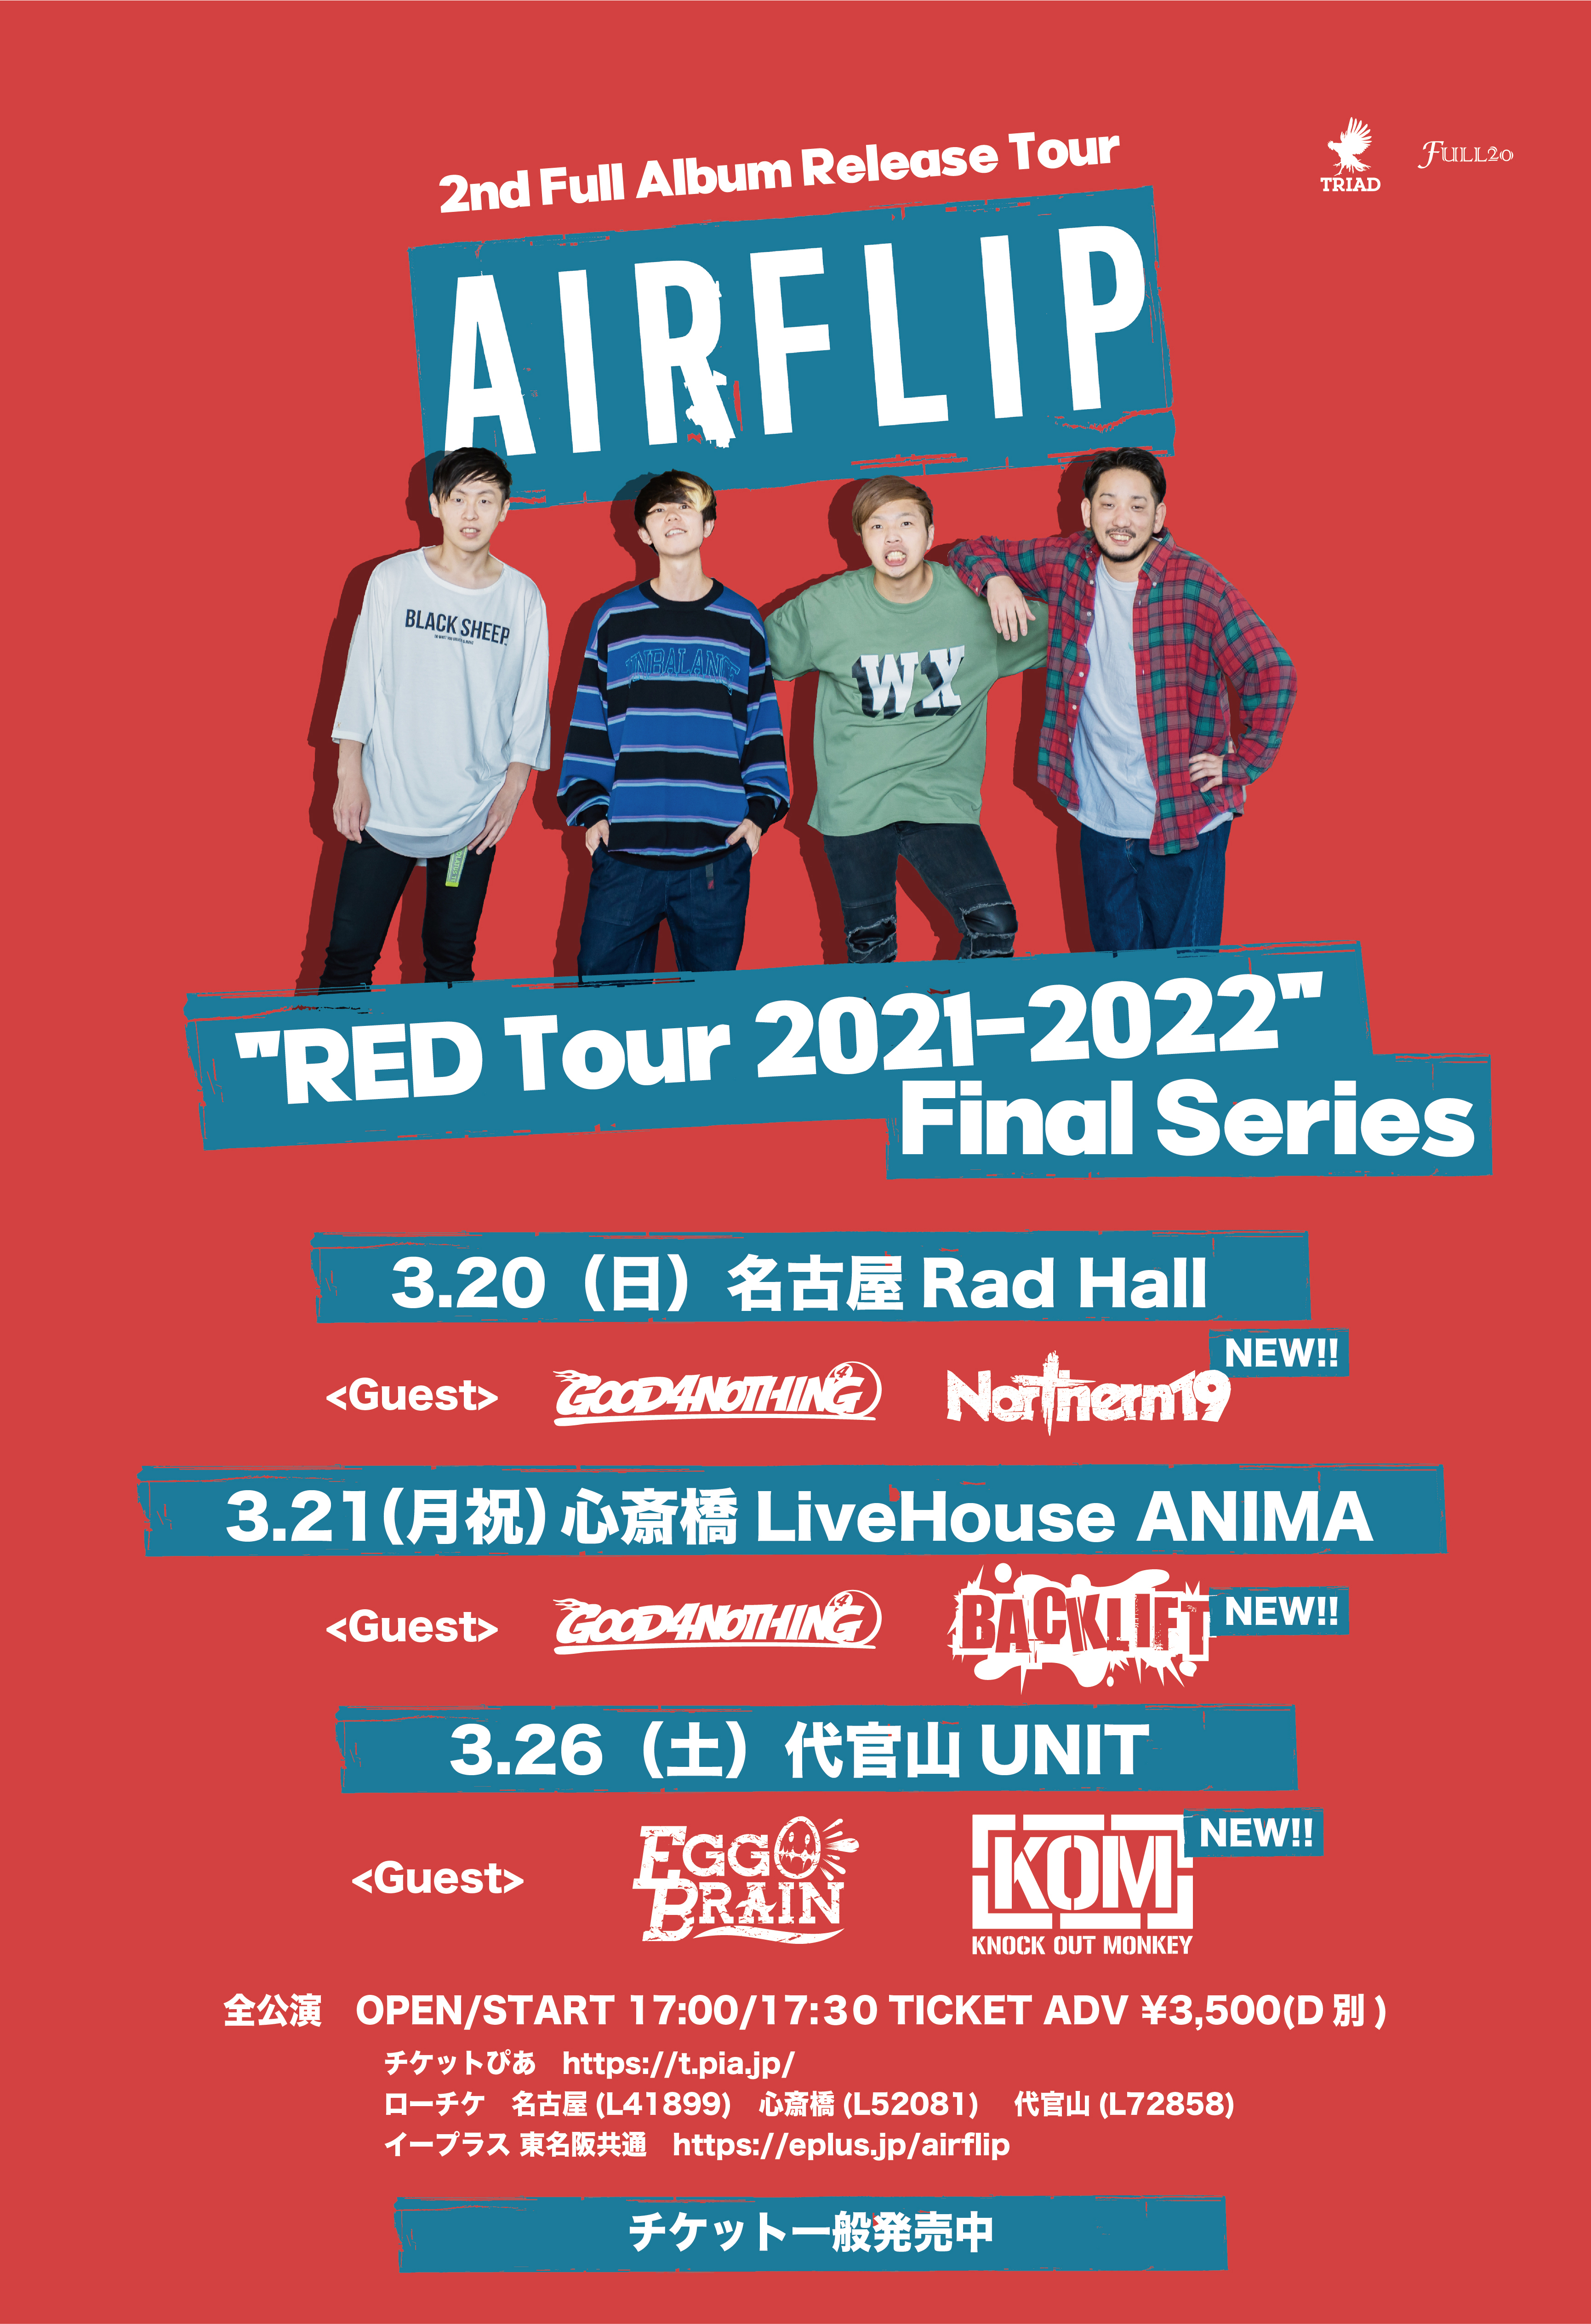 AIR FLIP "RED Tour 2021-2022"Final Series